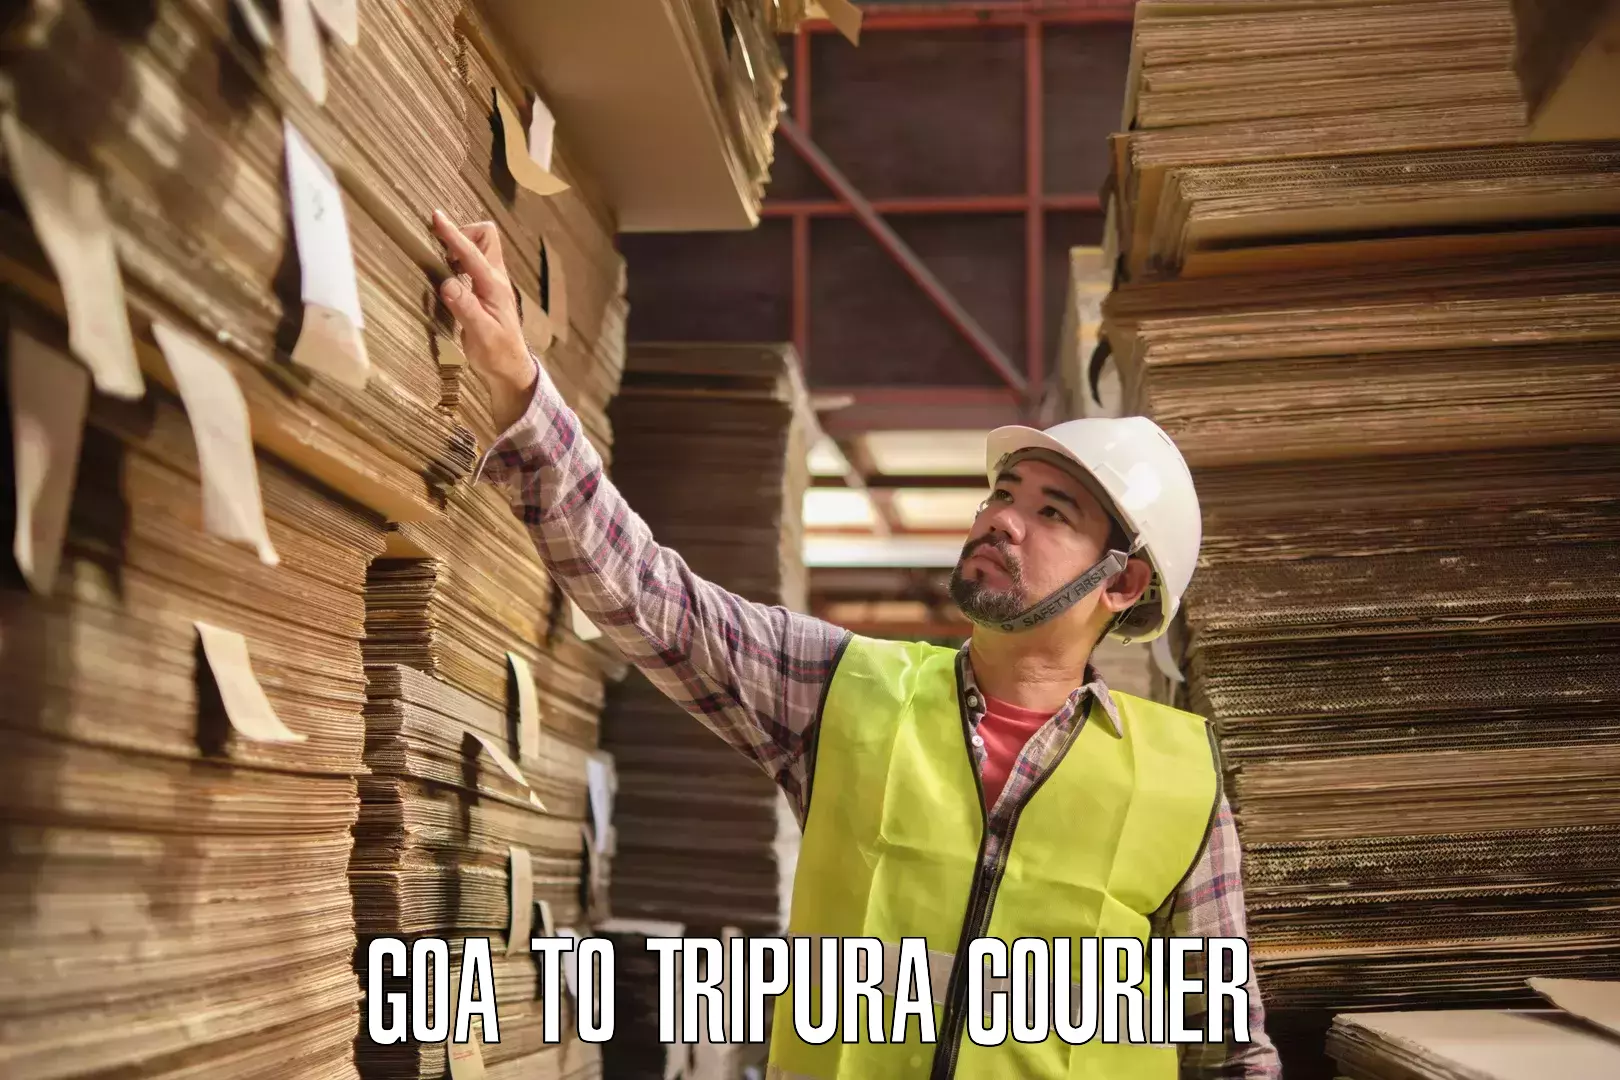 Doorstep delivery service Goa to Tripura